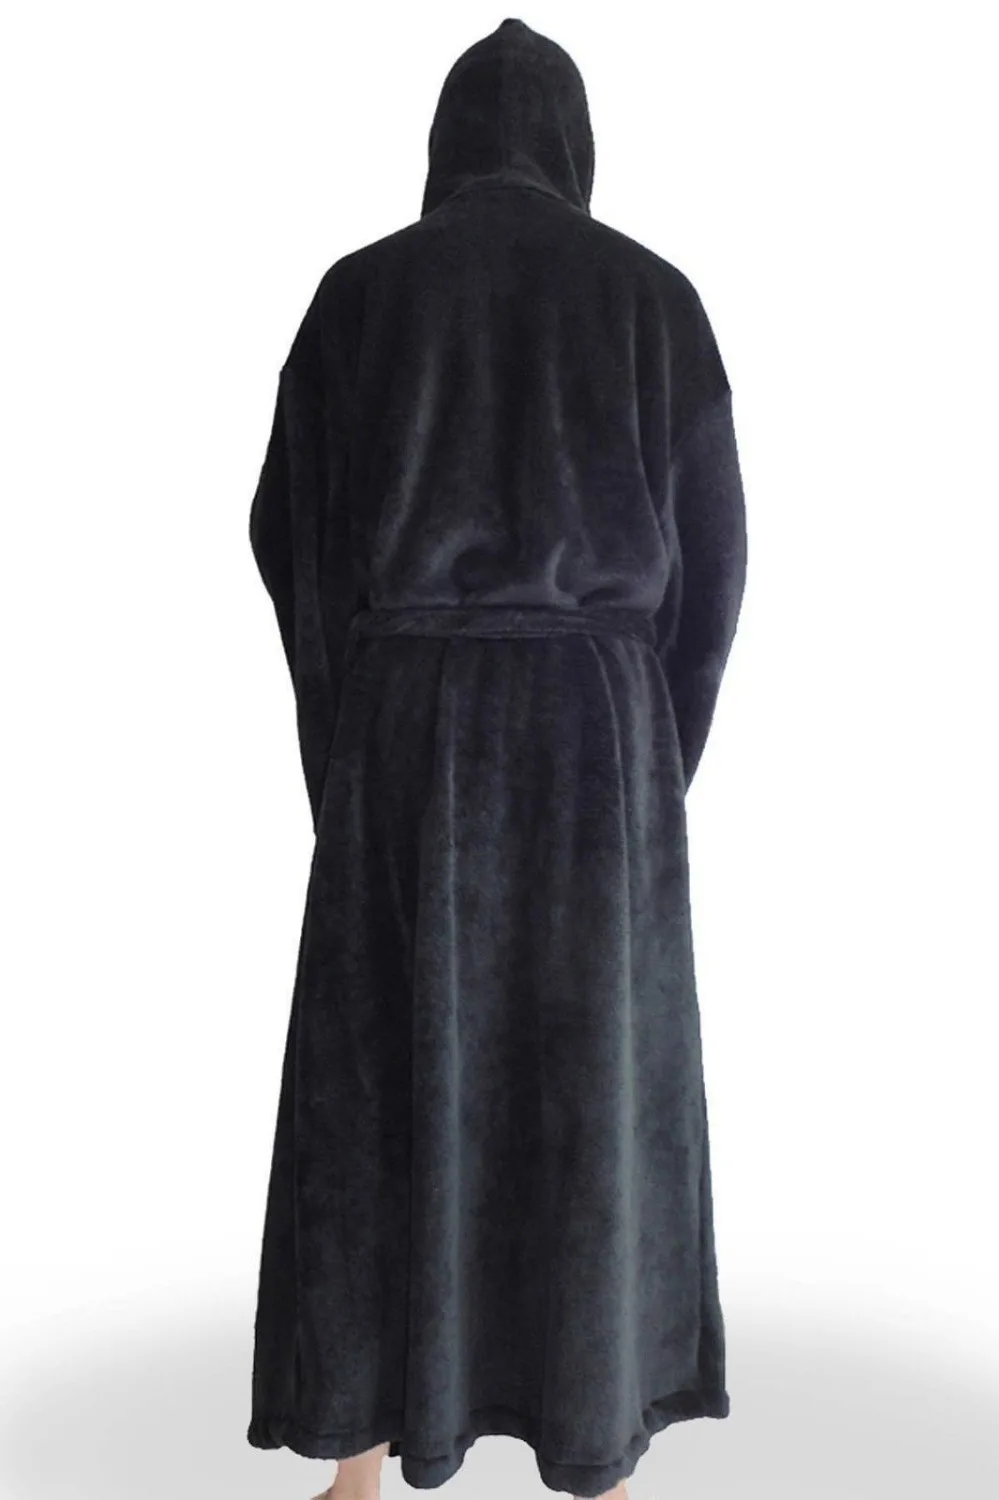 Star Wars банный халат с капюшоном императорской джедай Ситхов логотип костюм флисовый халат накидка карнавал, Хэллоуин Косплей костюмы